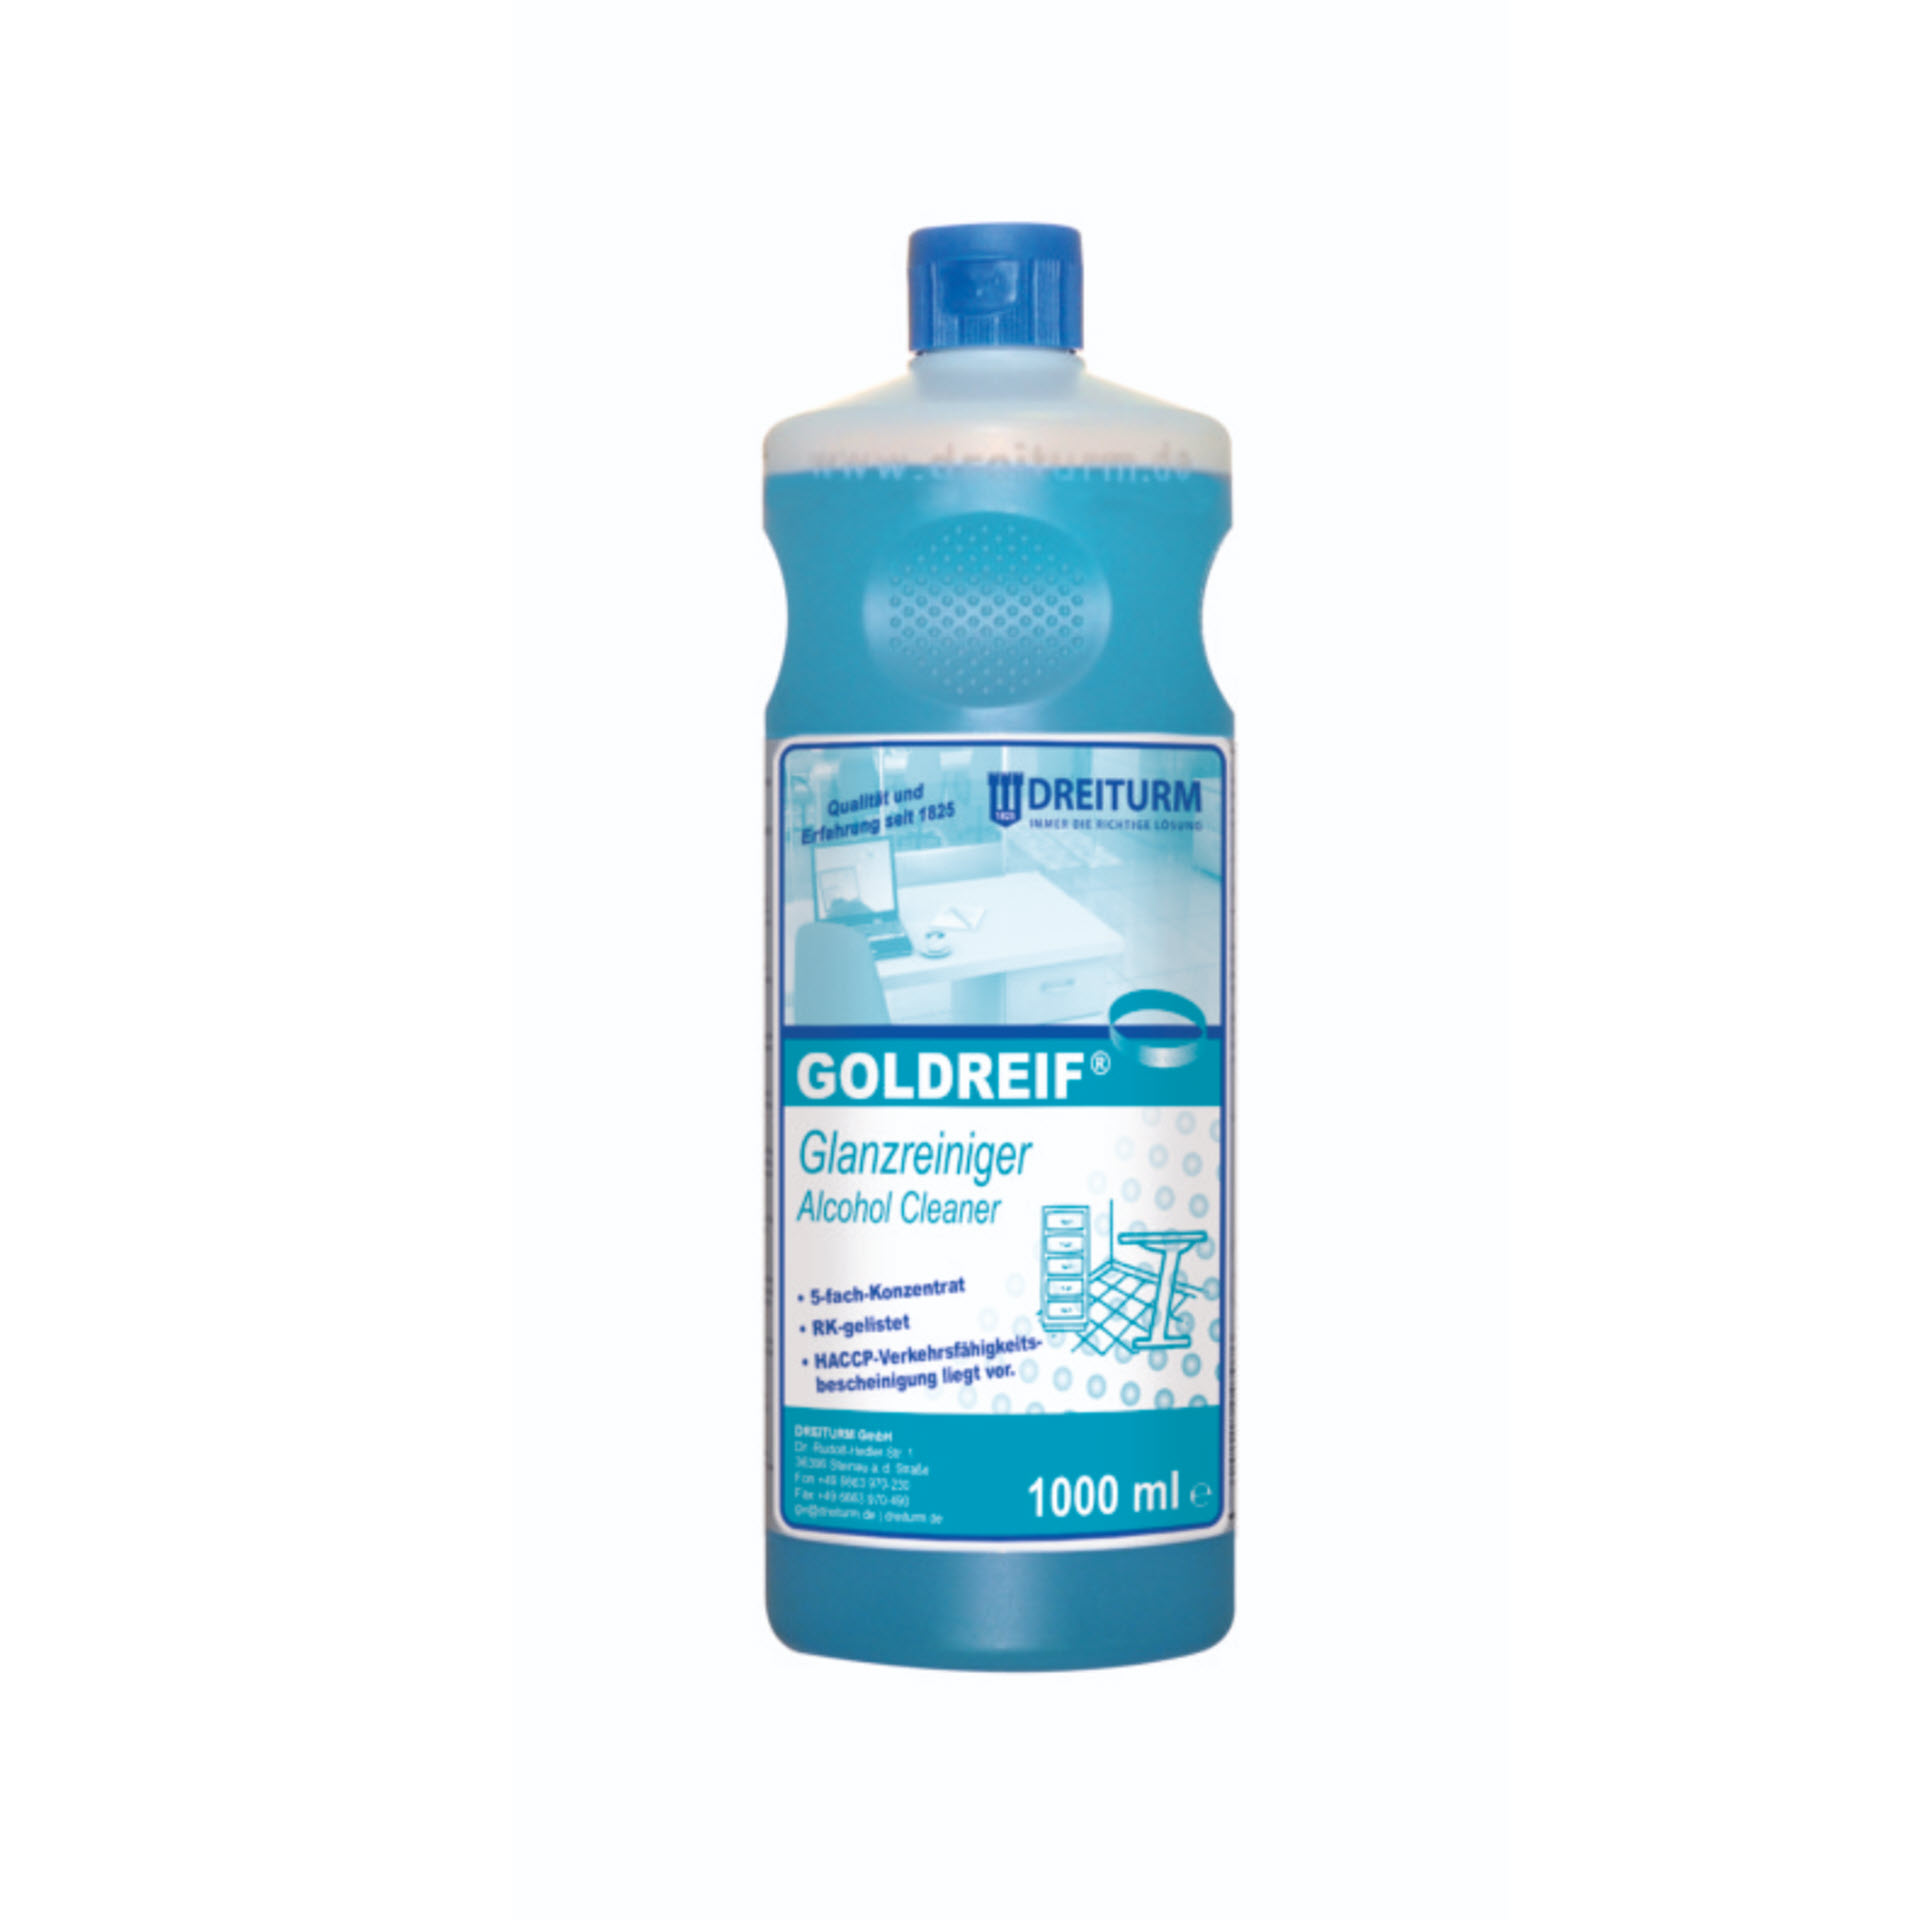 Dreiturm GOLDREIF® Glanzreiniger / Alkoholreiniger  - 5-fach Konzentrat - 1 Liter Rundflasche